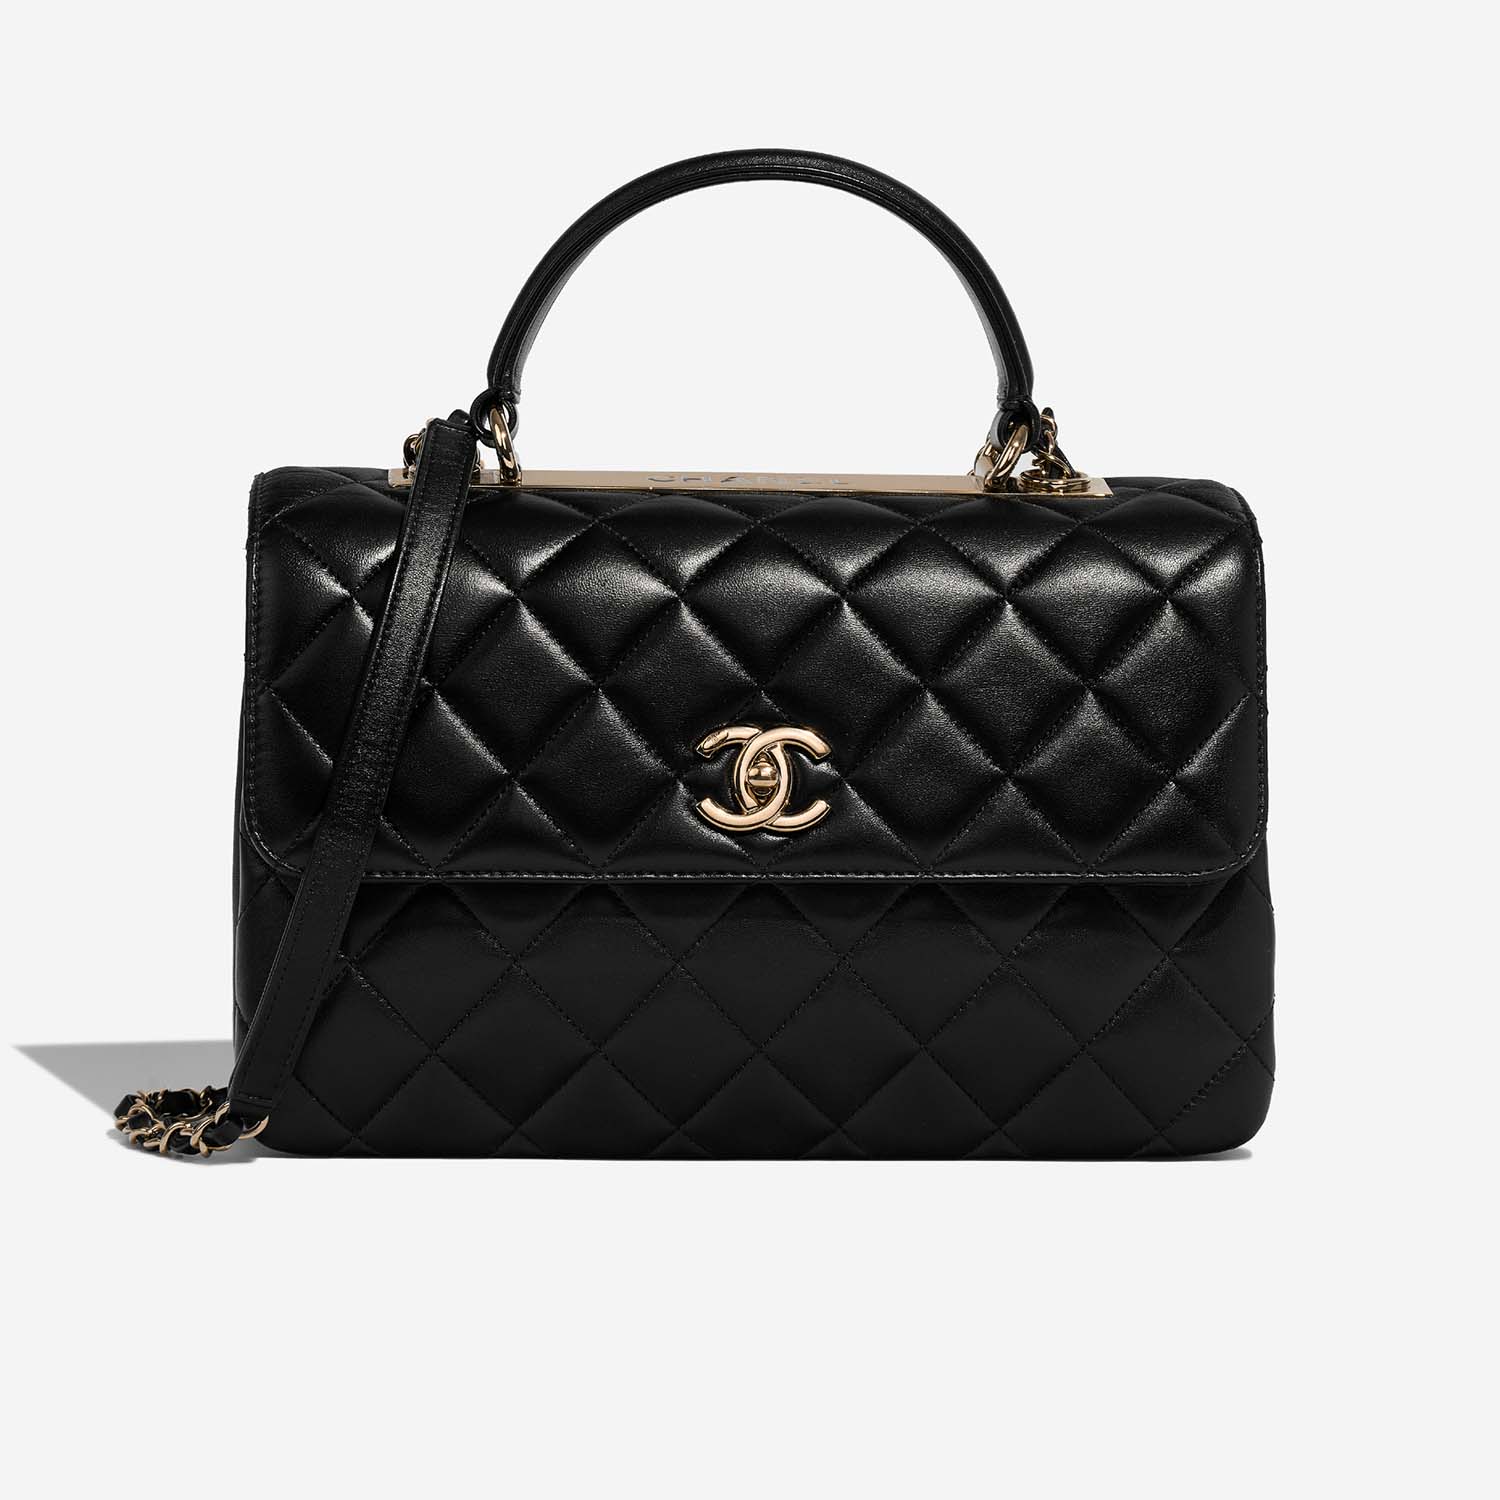 Chanel Trendy Large Black Front | Verkaufen Sie Ihre Designer-Tasche auf Saclab.com